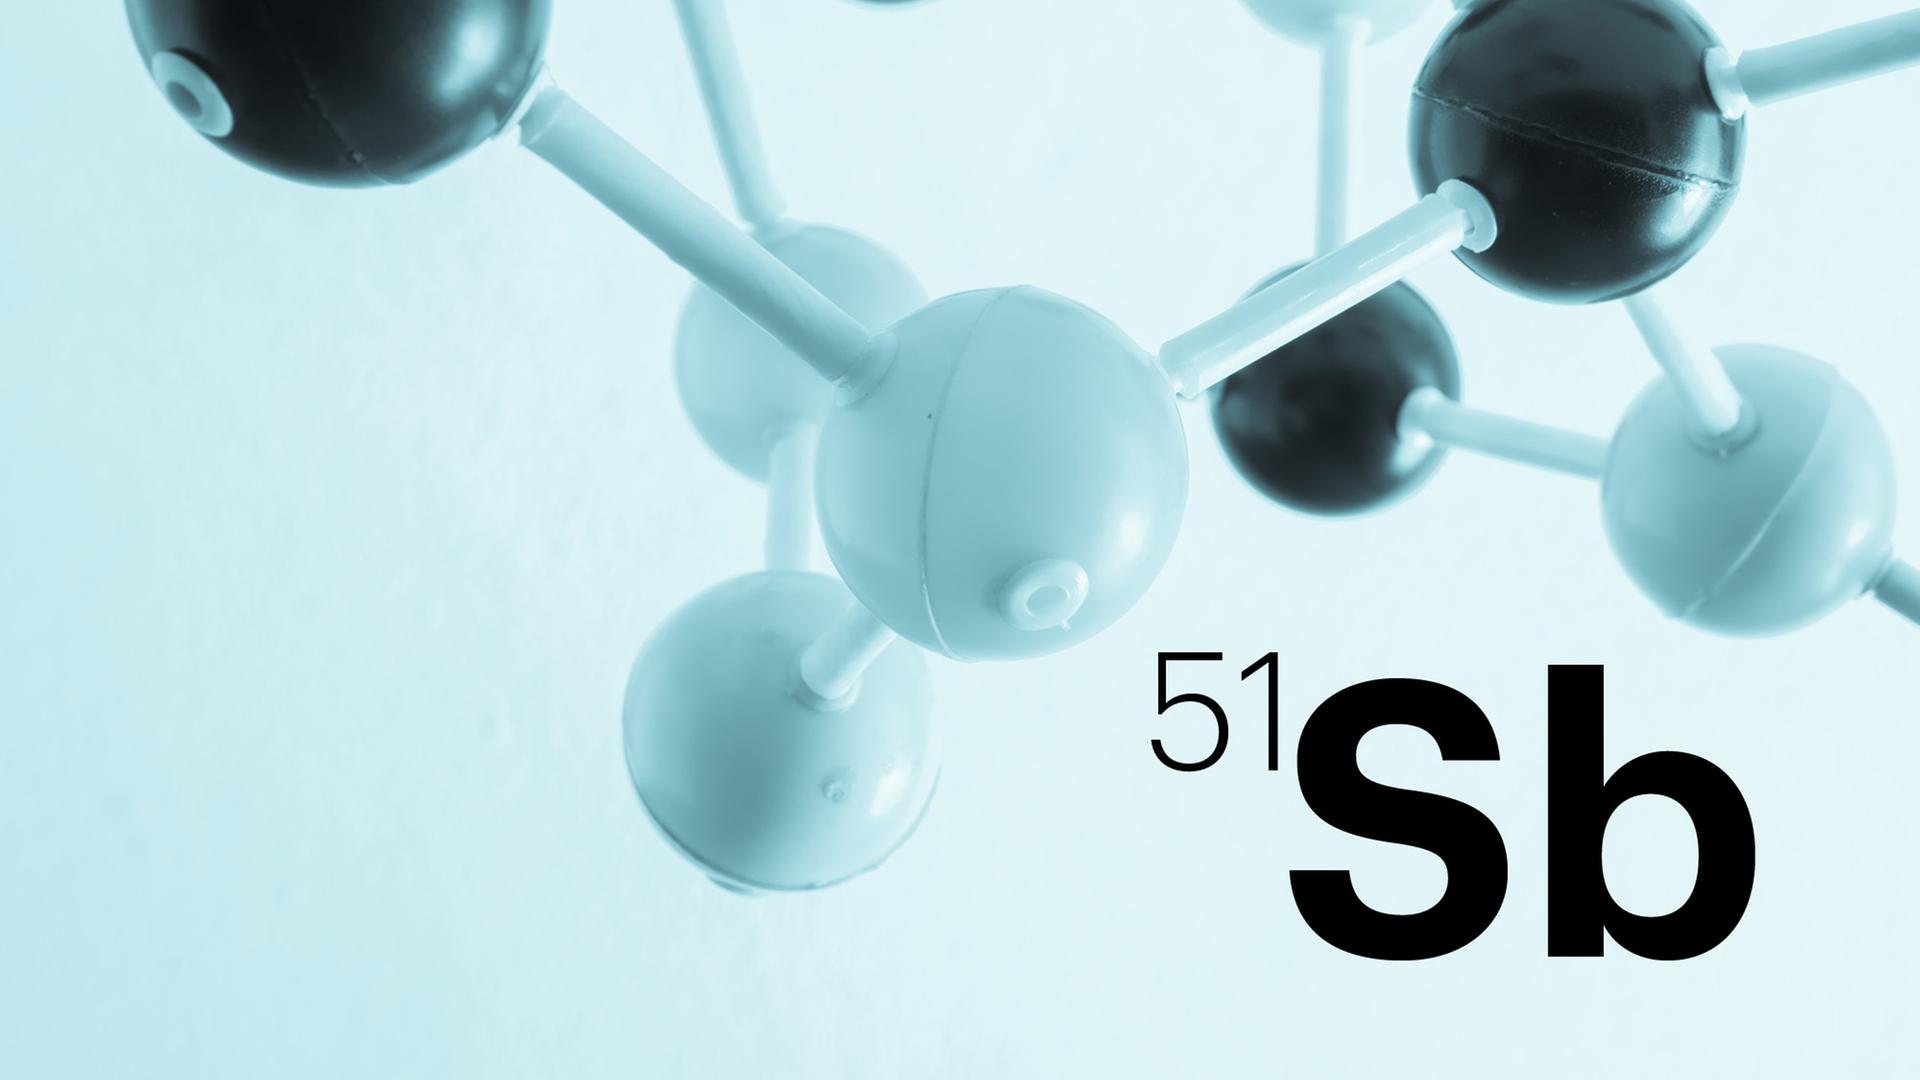 Das Modell eines Moleküls ist hinter der Abkürzung Sb (für Antimon) zu sehen.